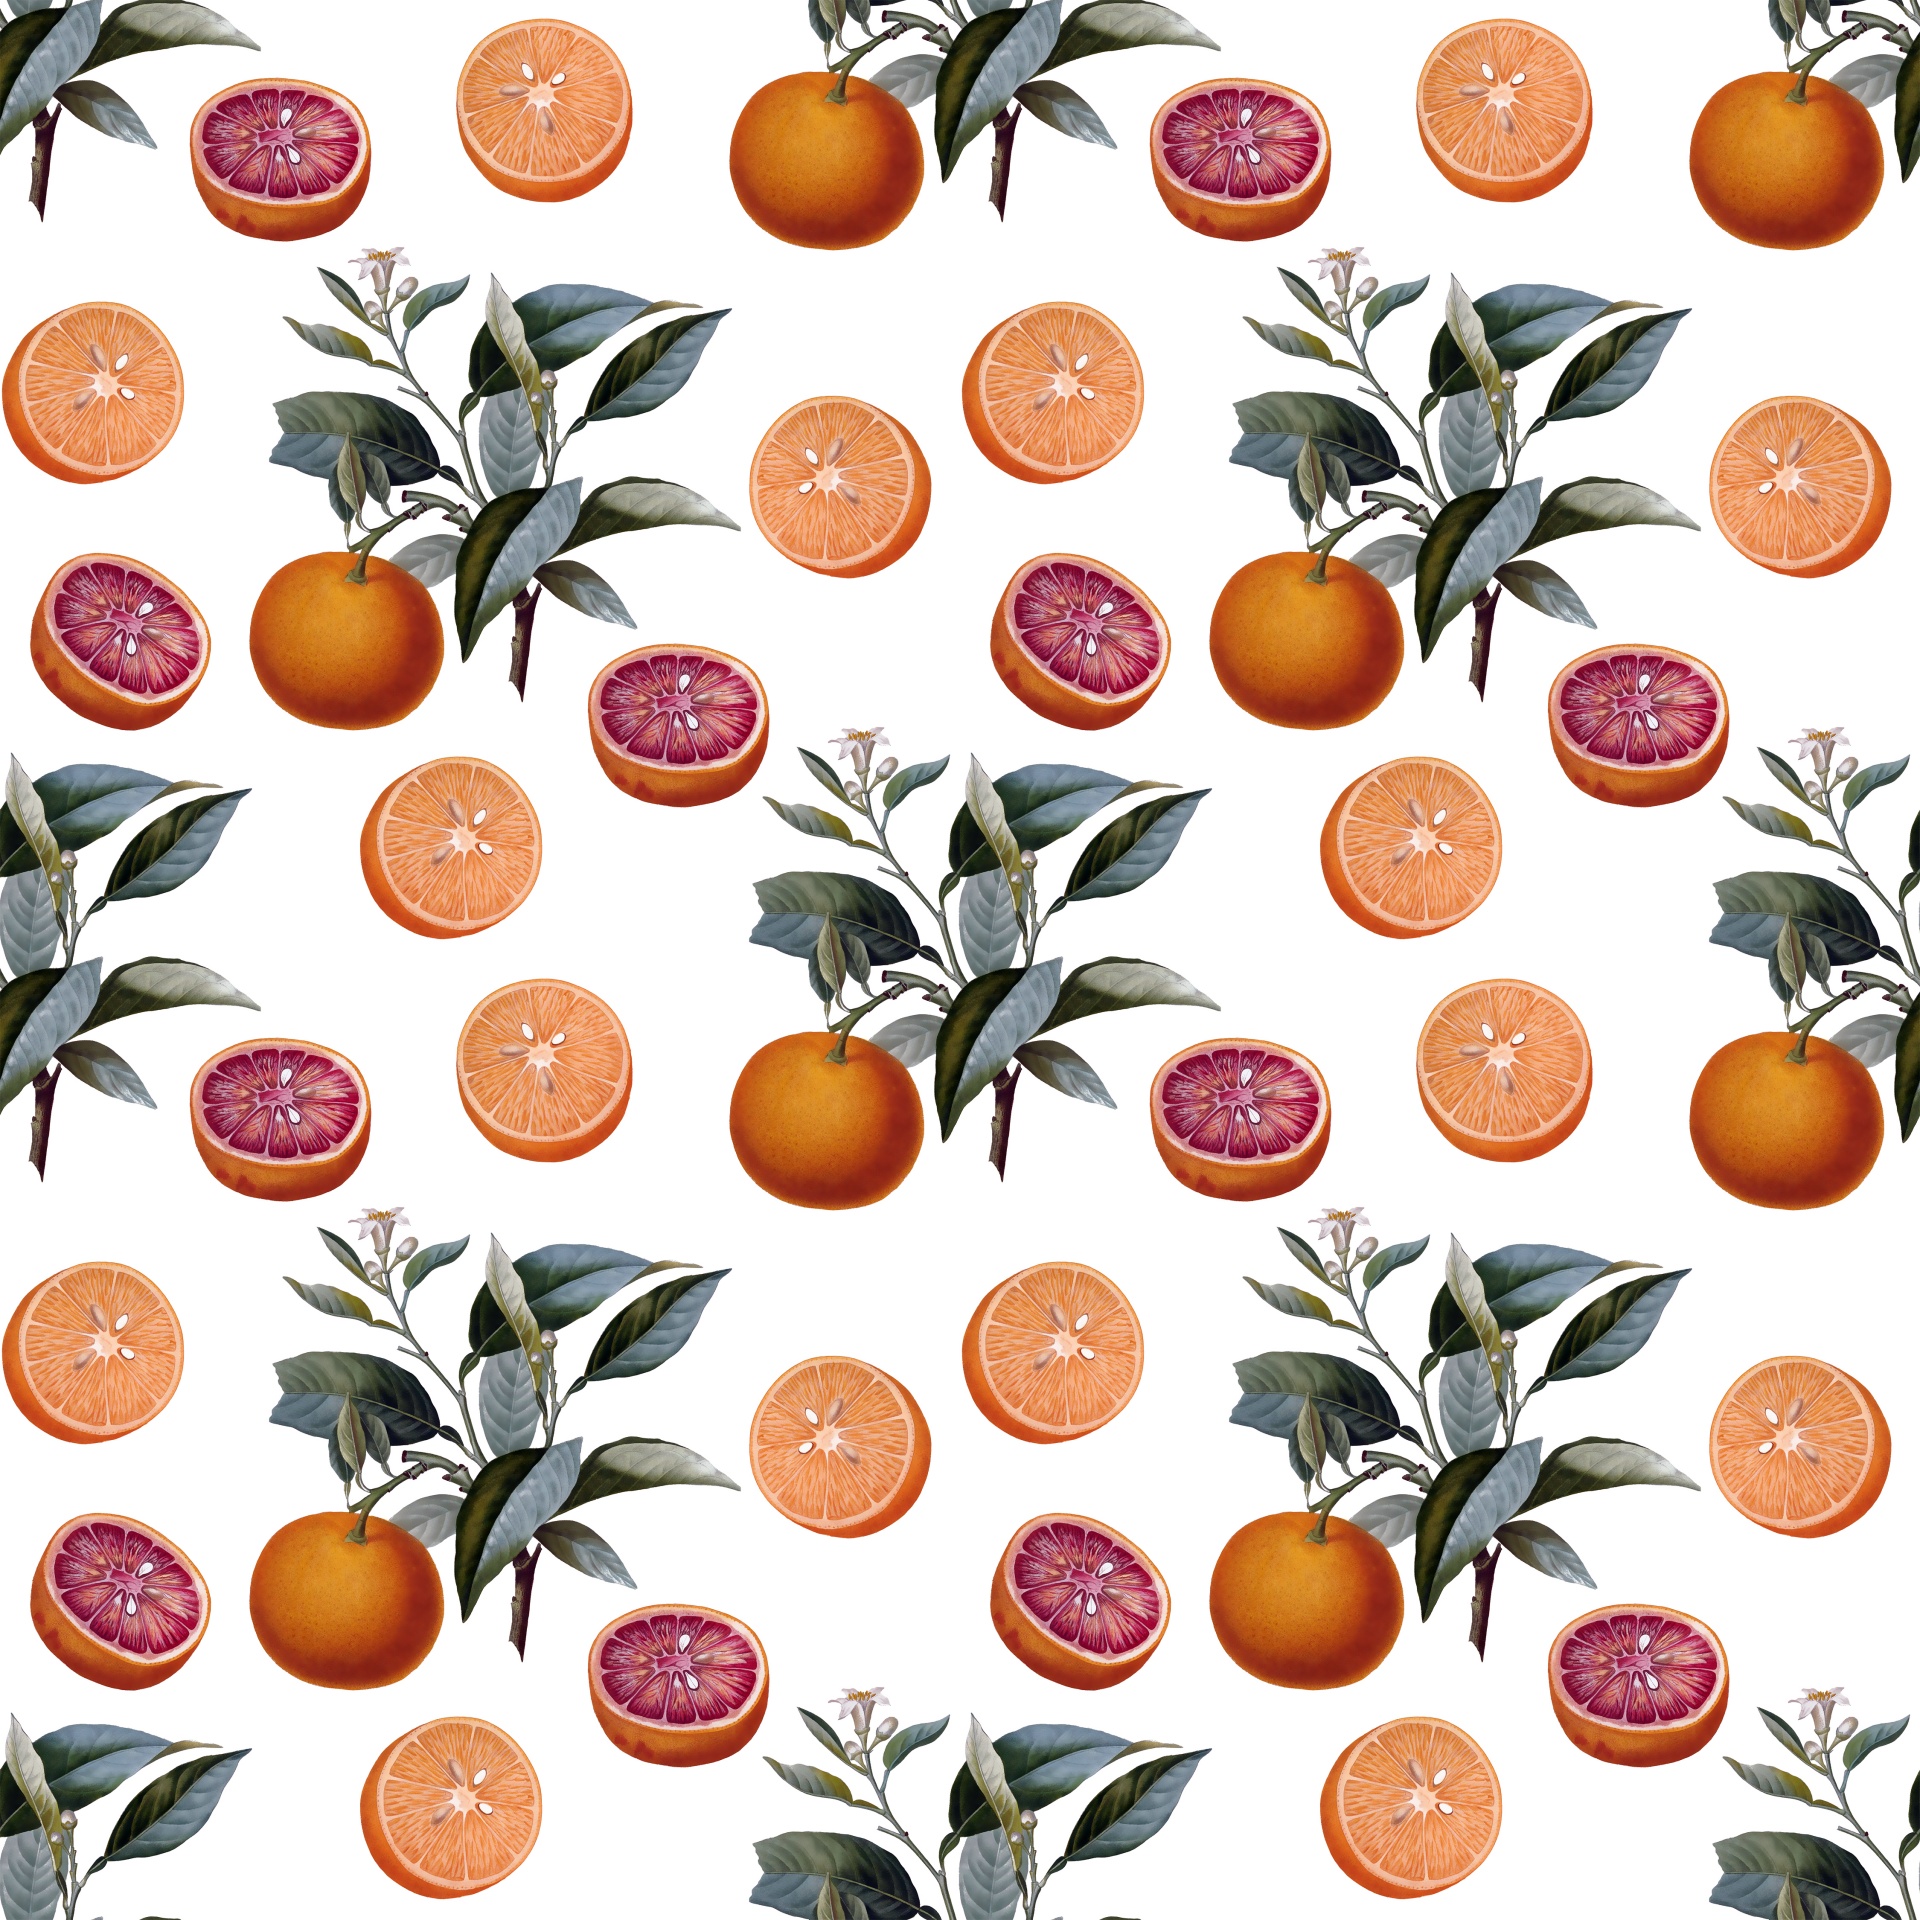 orange oranges fruit free photo